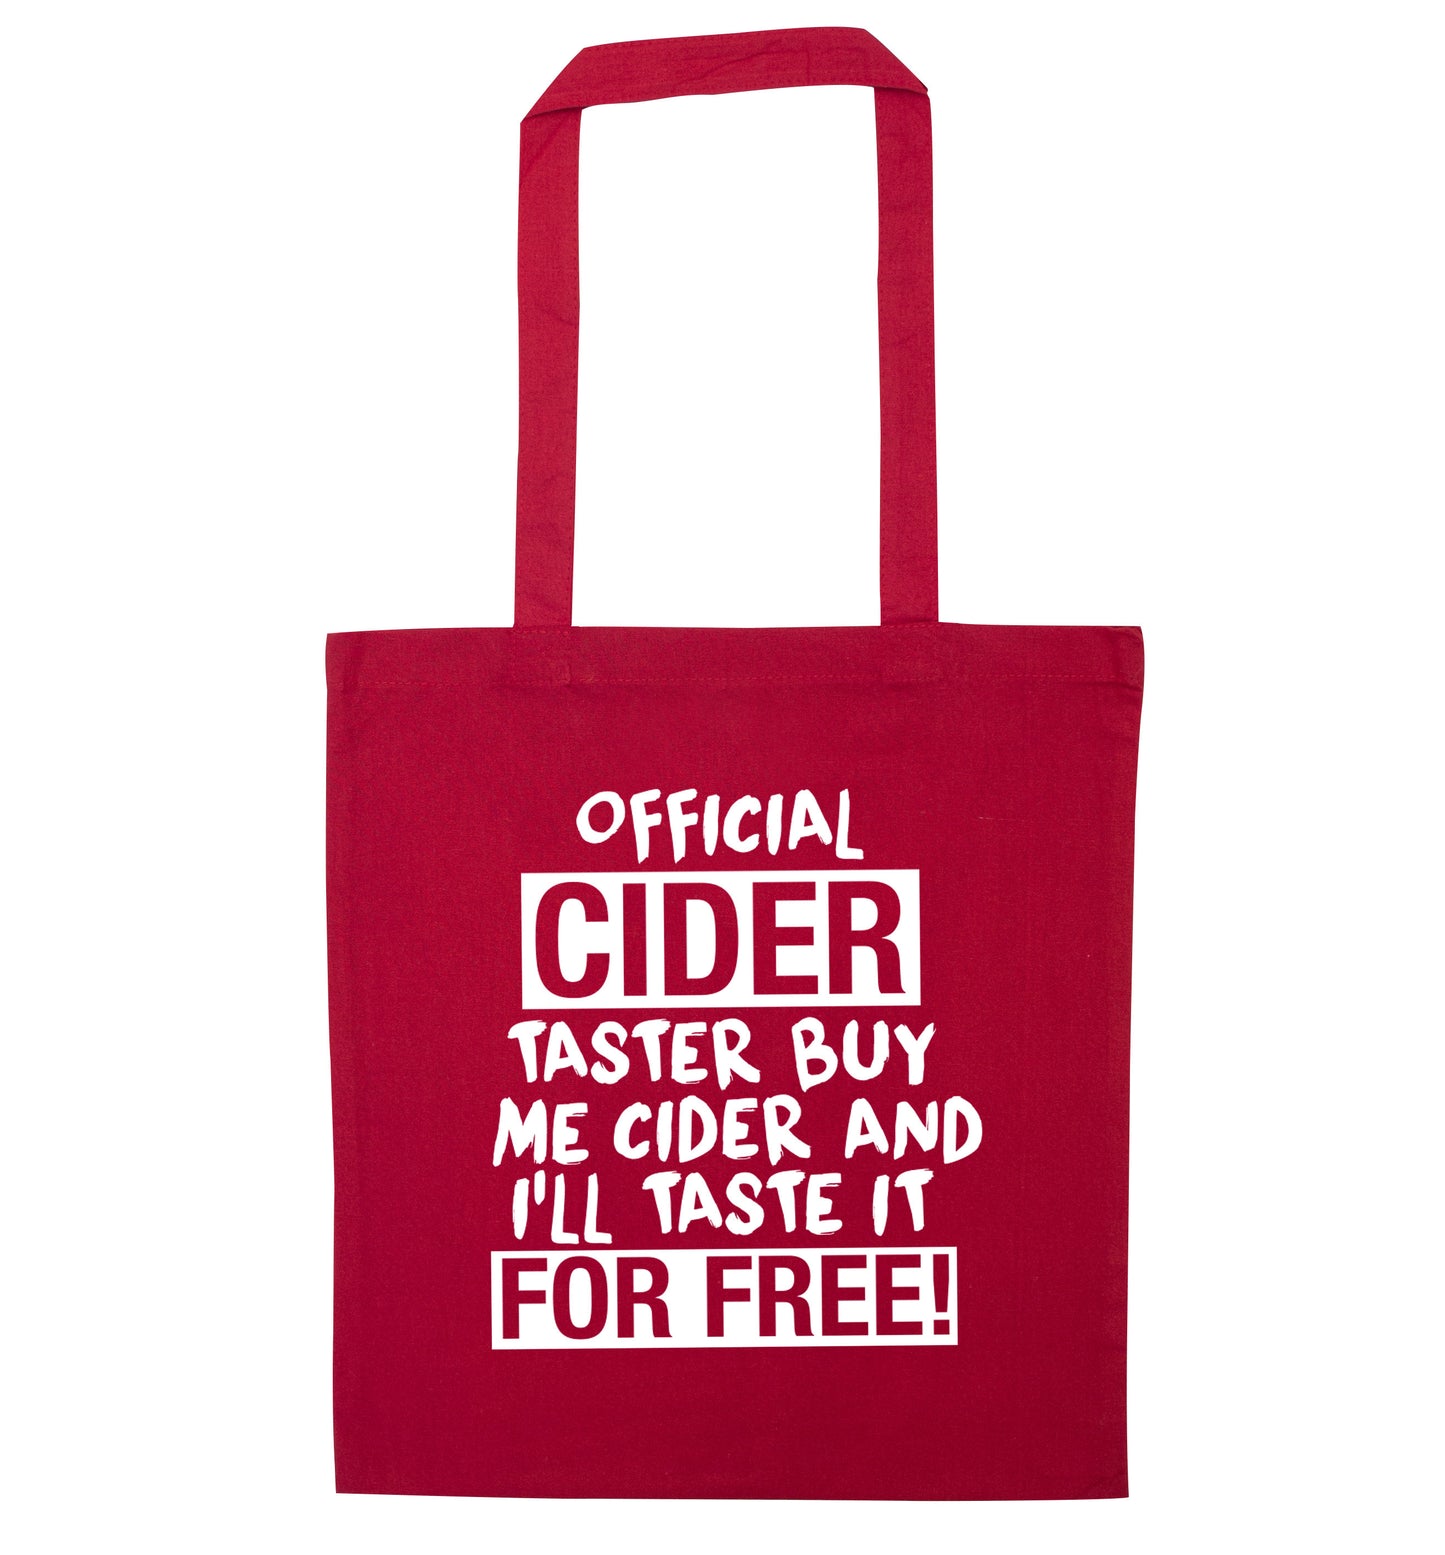 Official cider taster buy me cider and I'll taste it for free! red tote bag